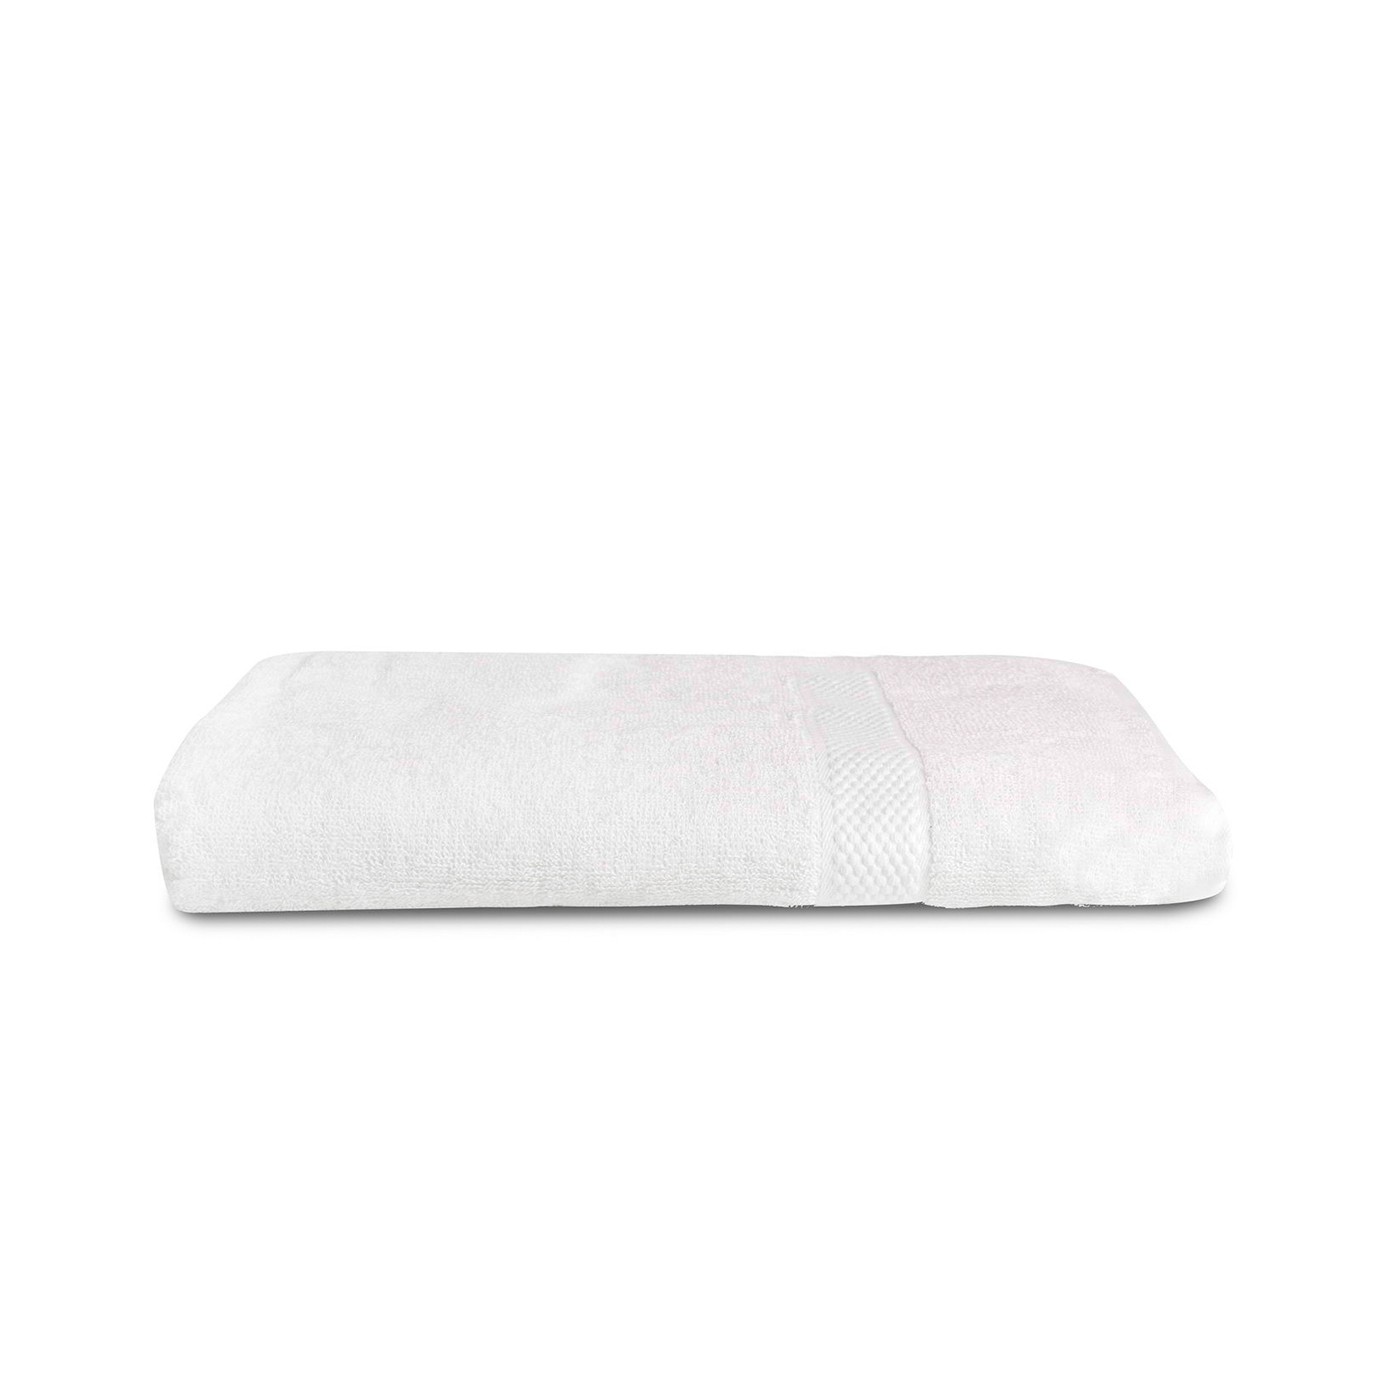 Полотенце Хельга цвет: белый (70х140 см), размер 70х140 см sofi881250 Полотенце Хельга цвет: белый (70х140 см) - фото 1